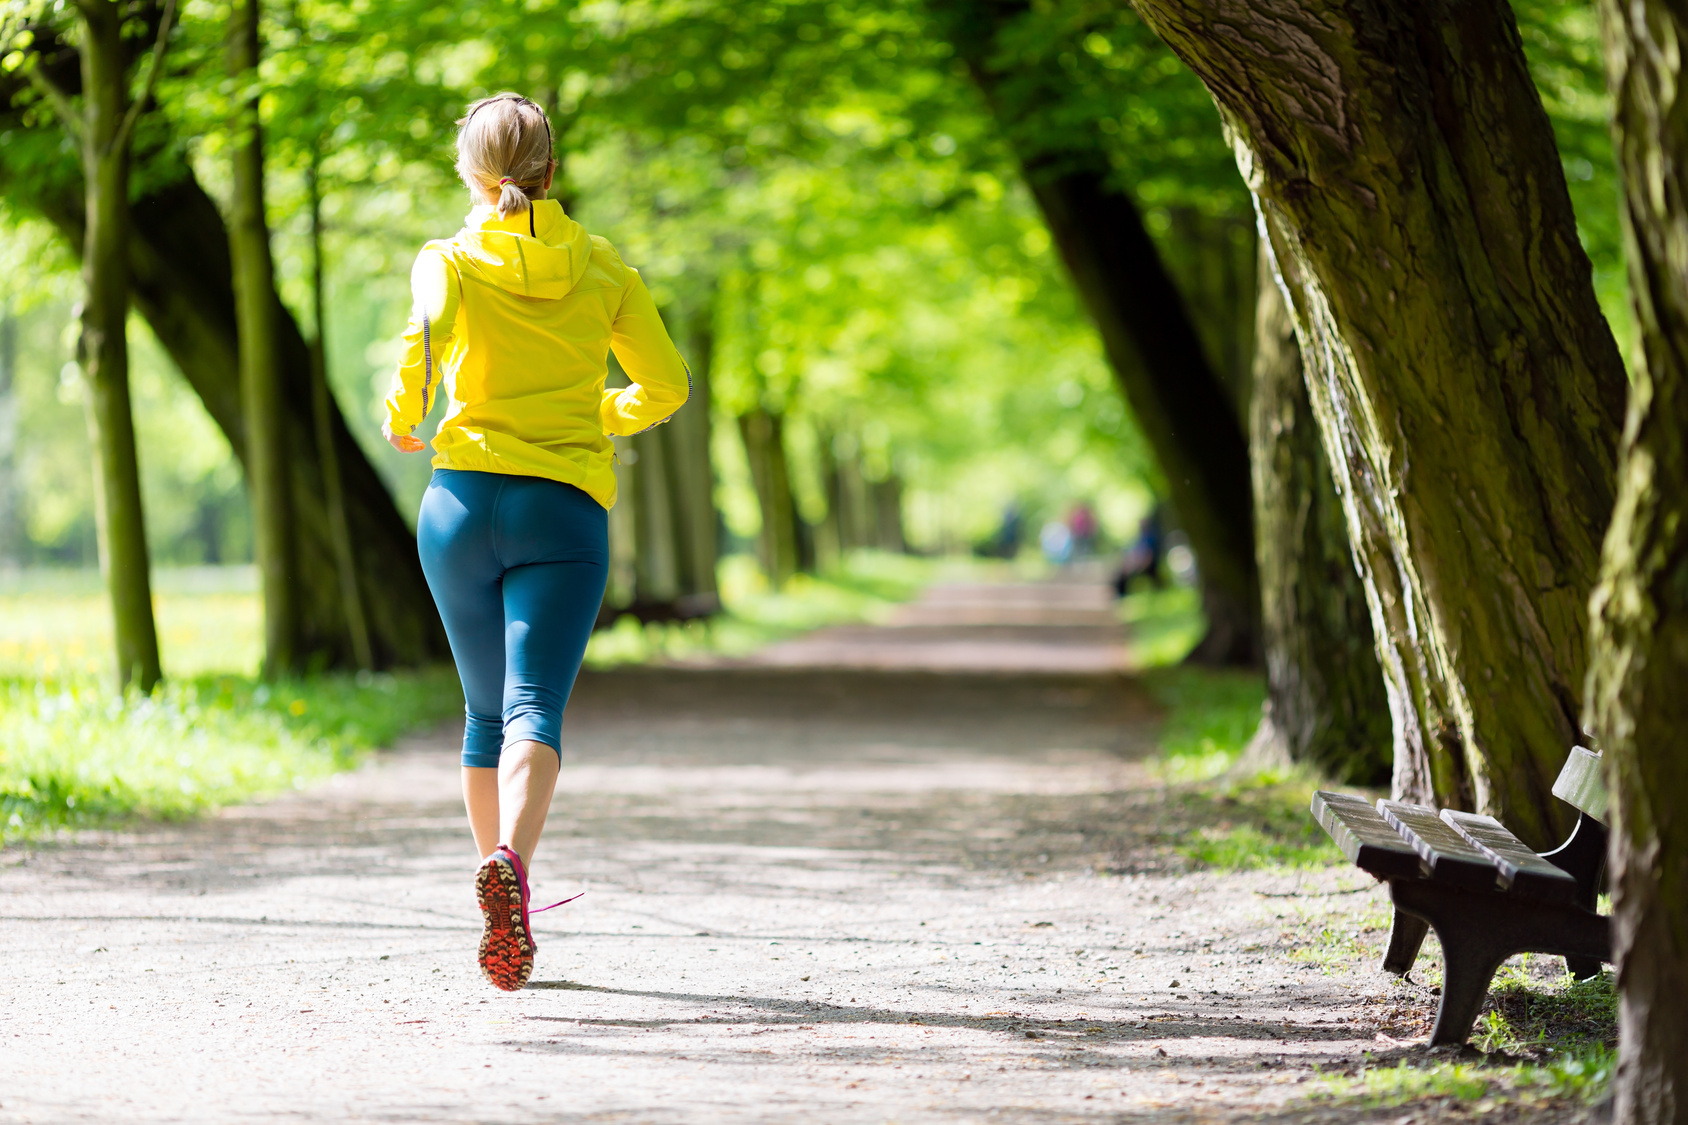 Woman runner running jogging in summer park